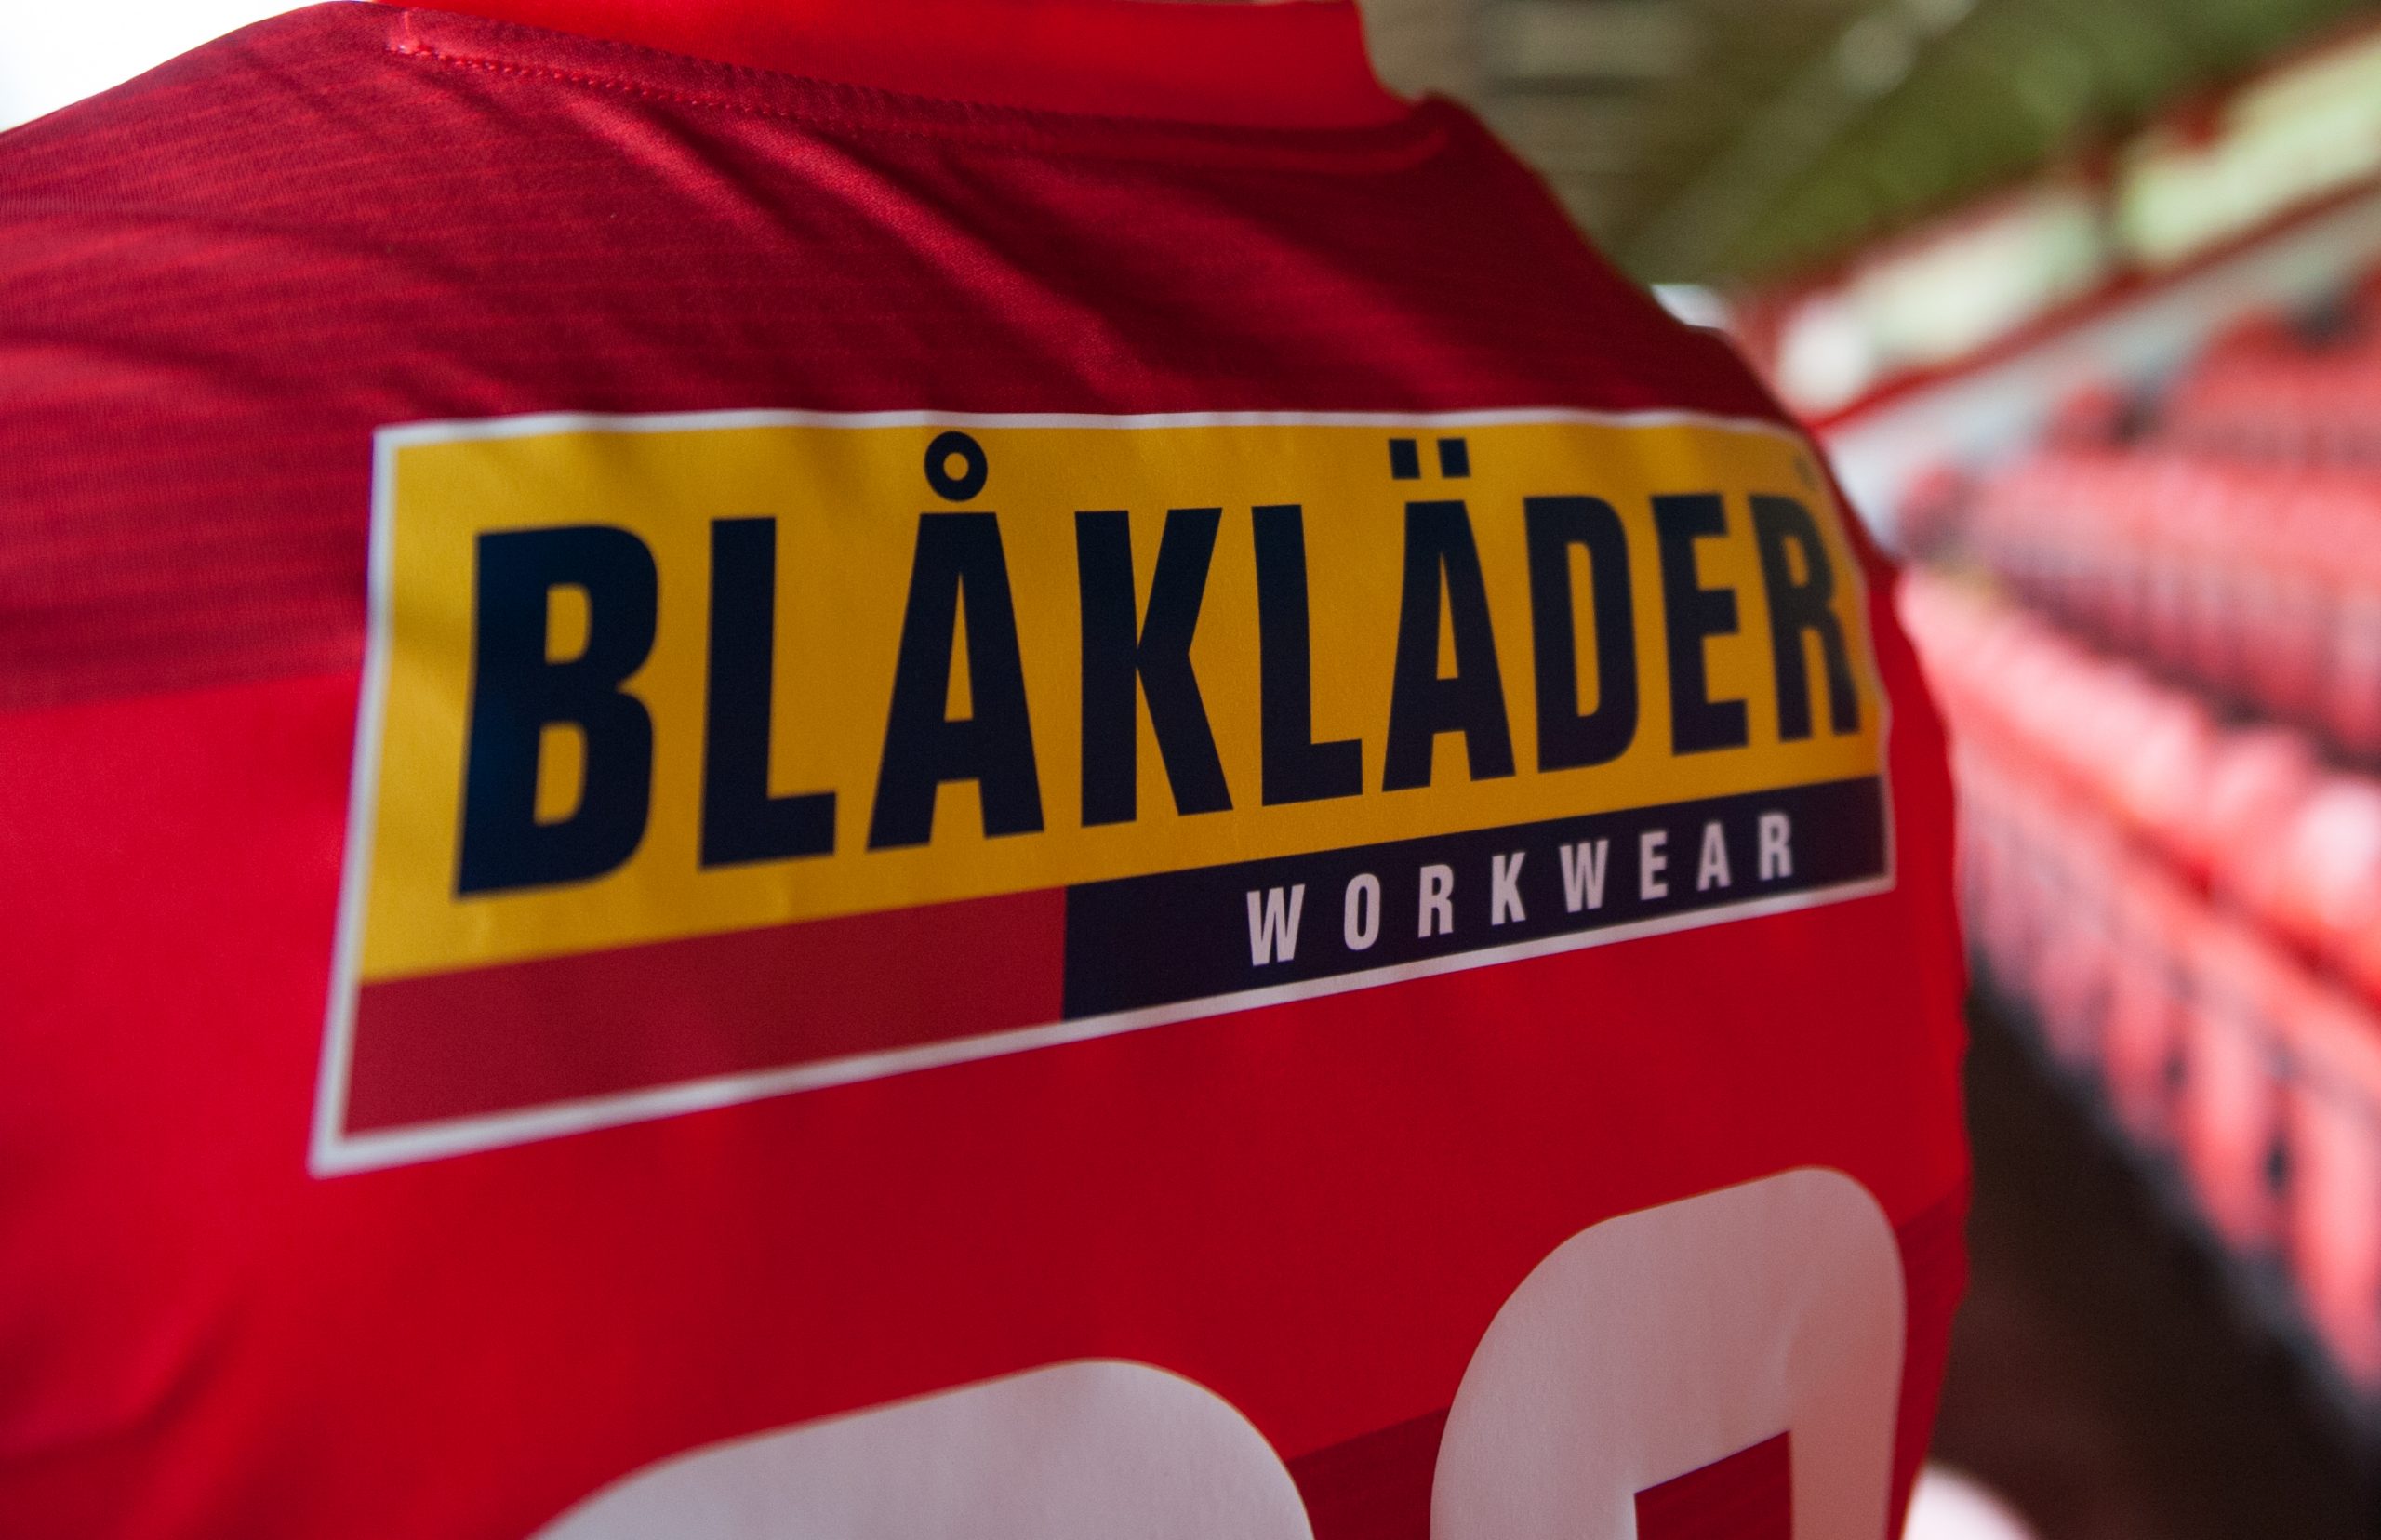 Shels announces Blåkläder as Back of Jersey Sponsor